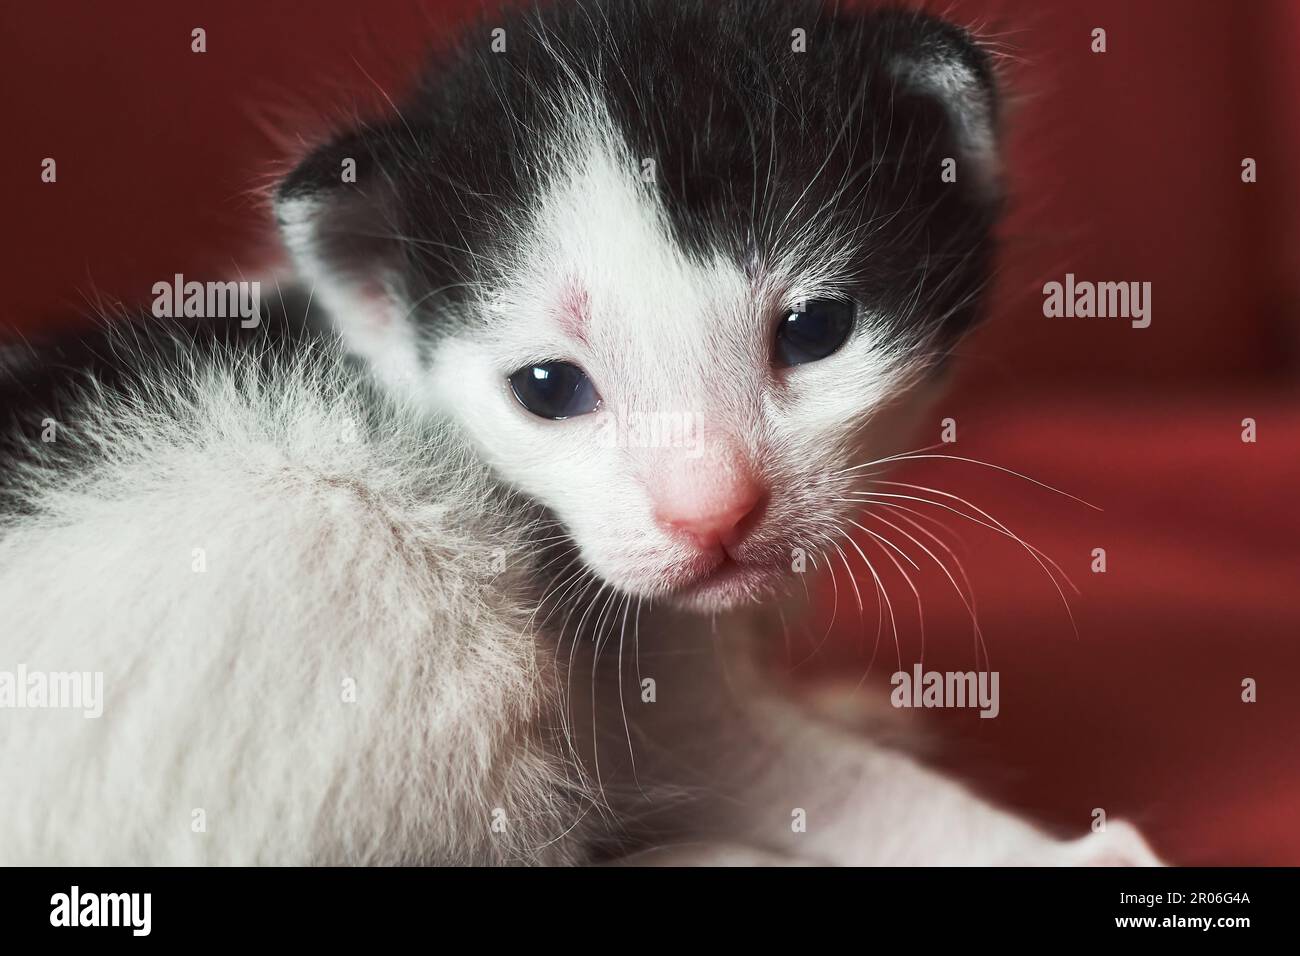 Cat Kitten Portraits Stock Photo